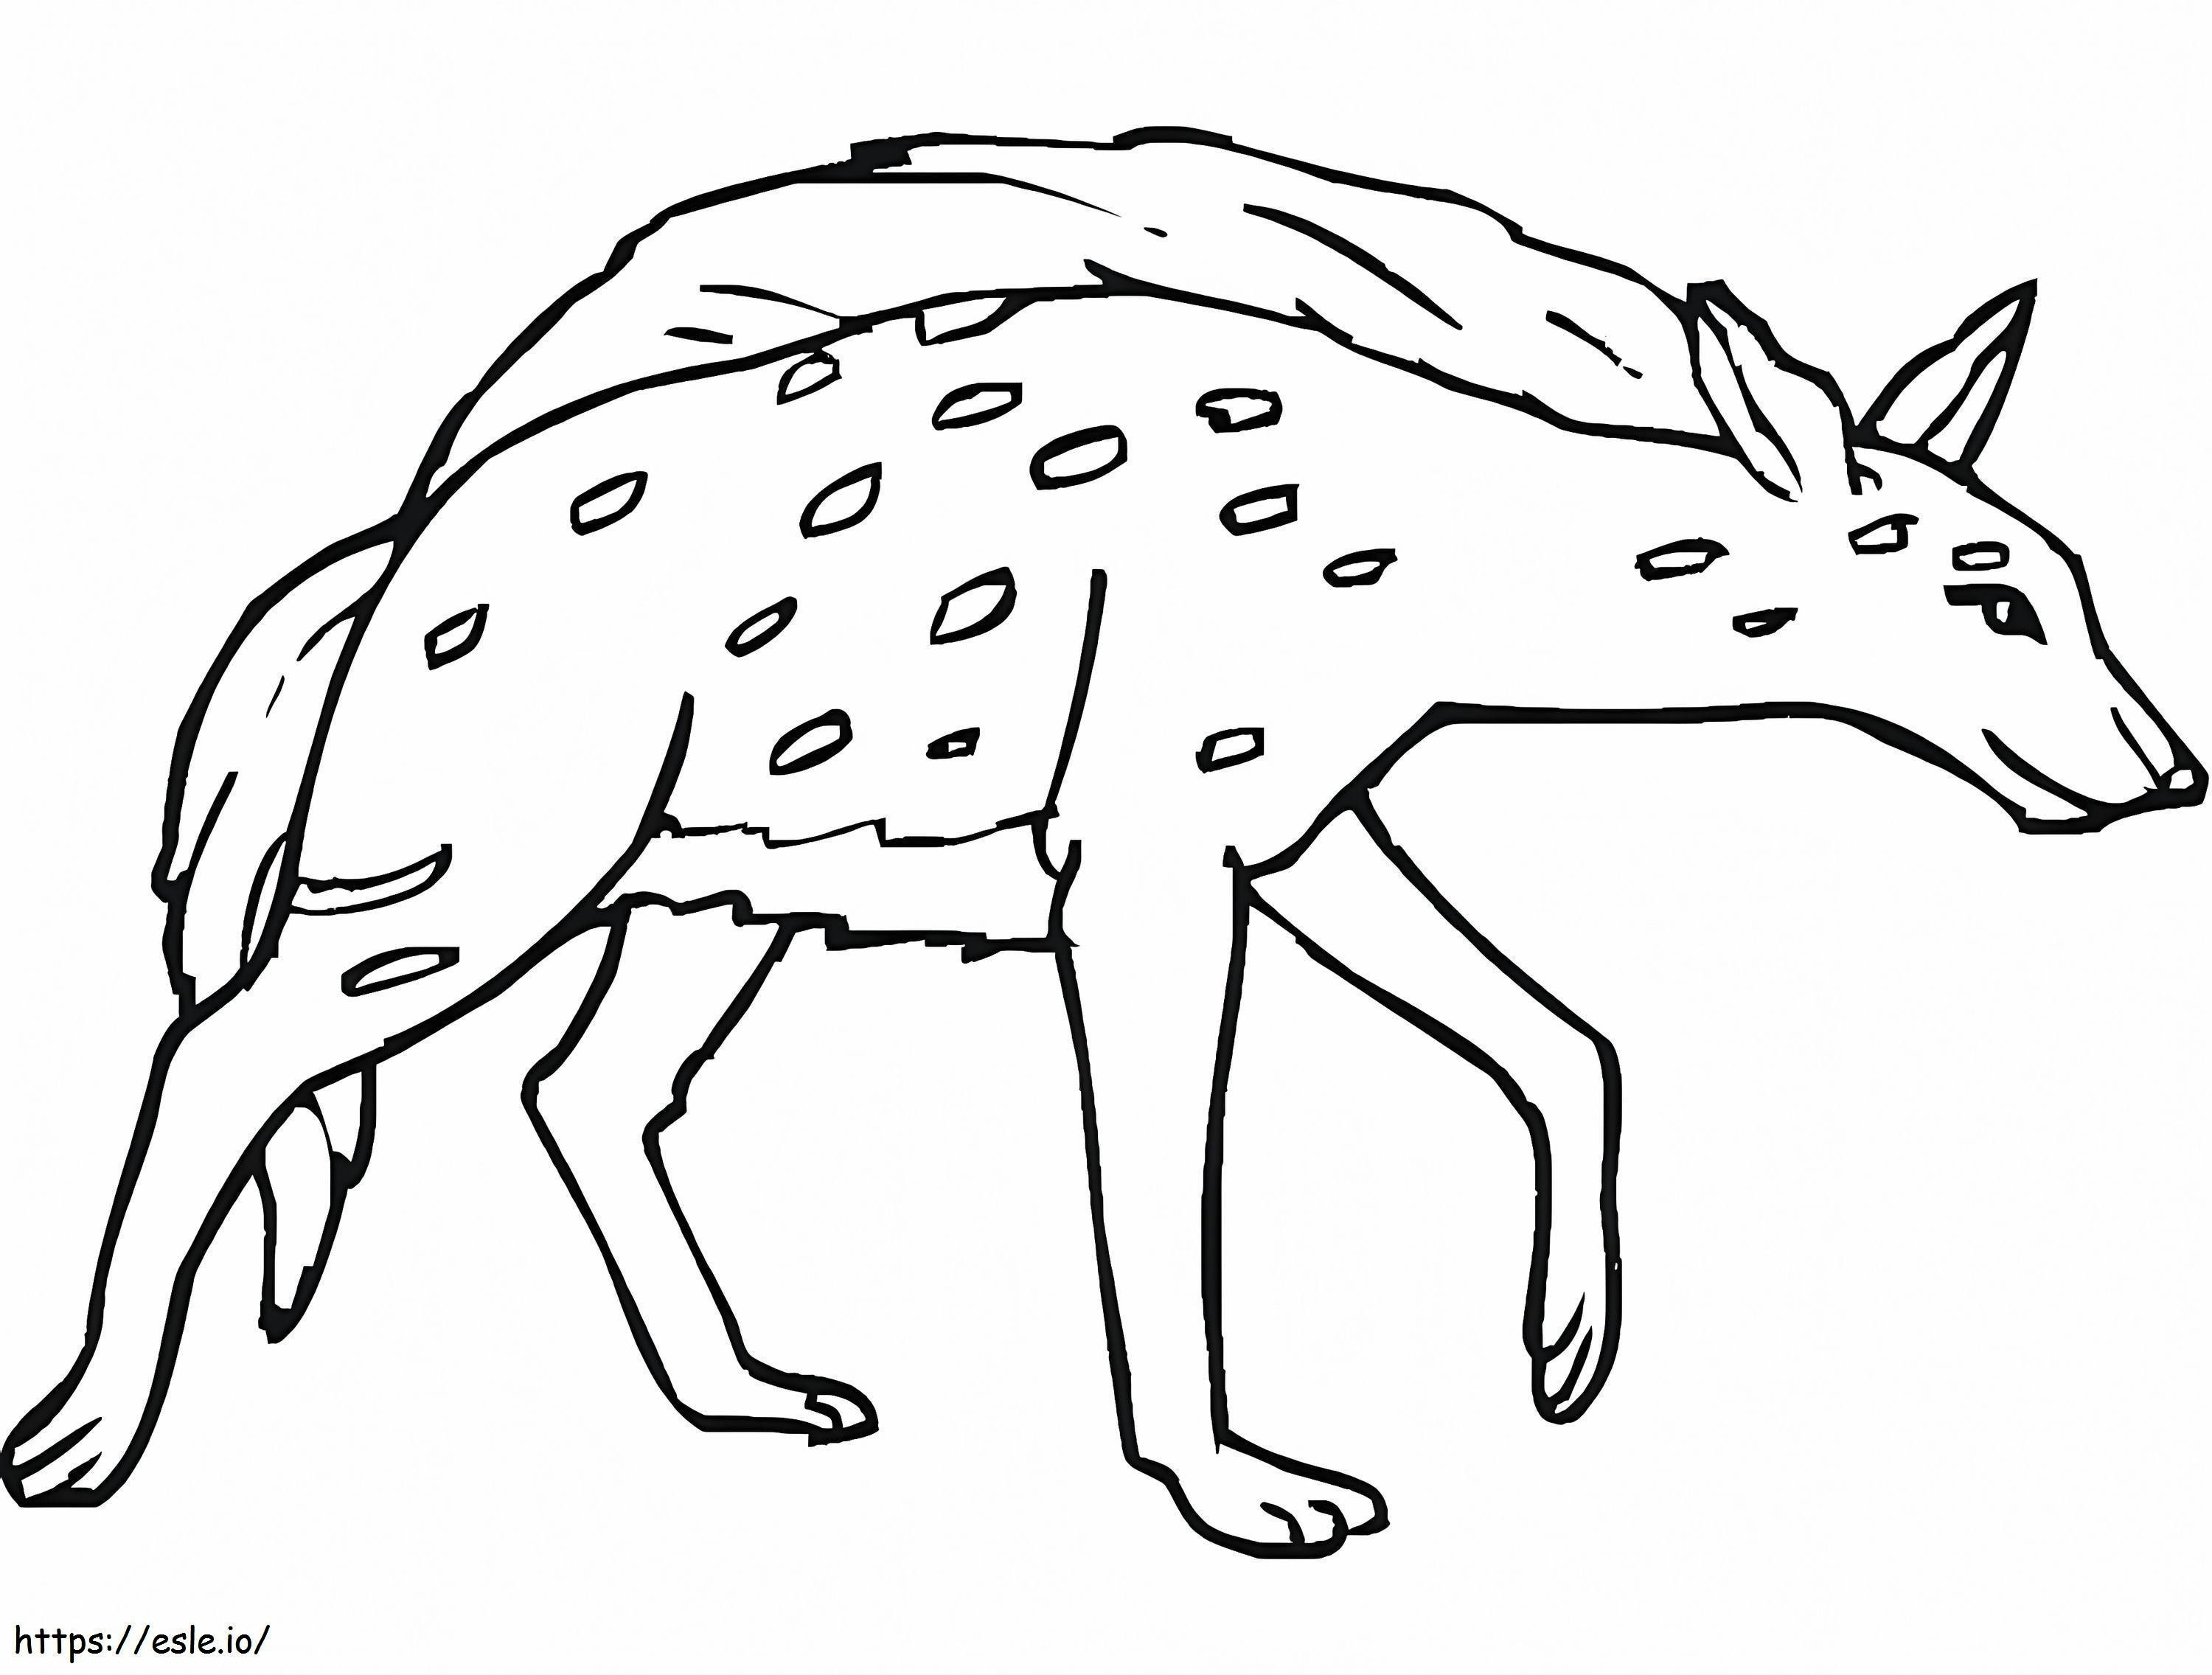 La iena maculata 3 da colorare